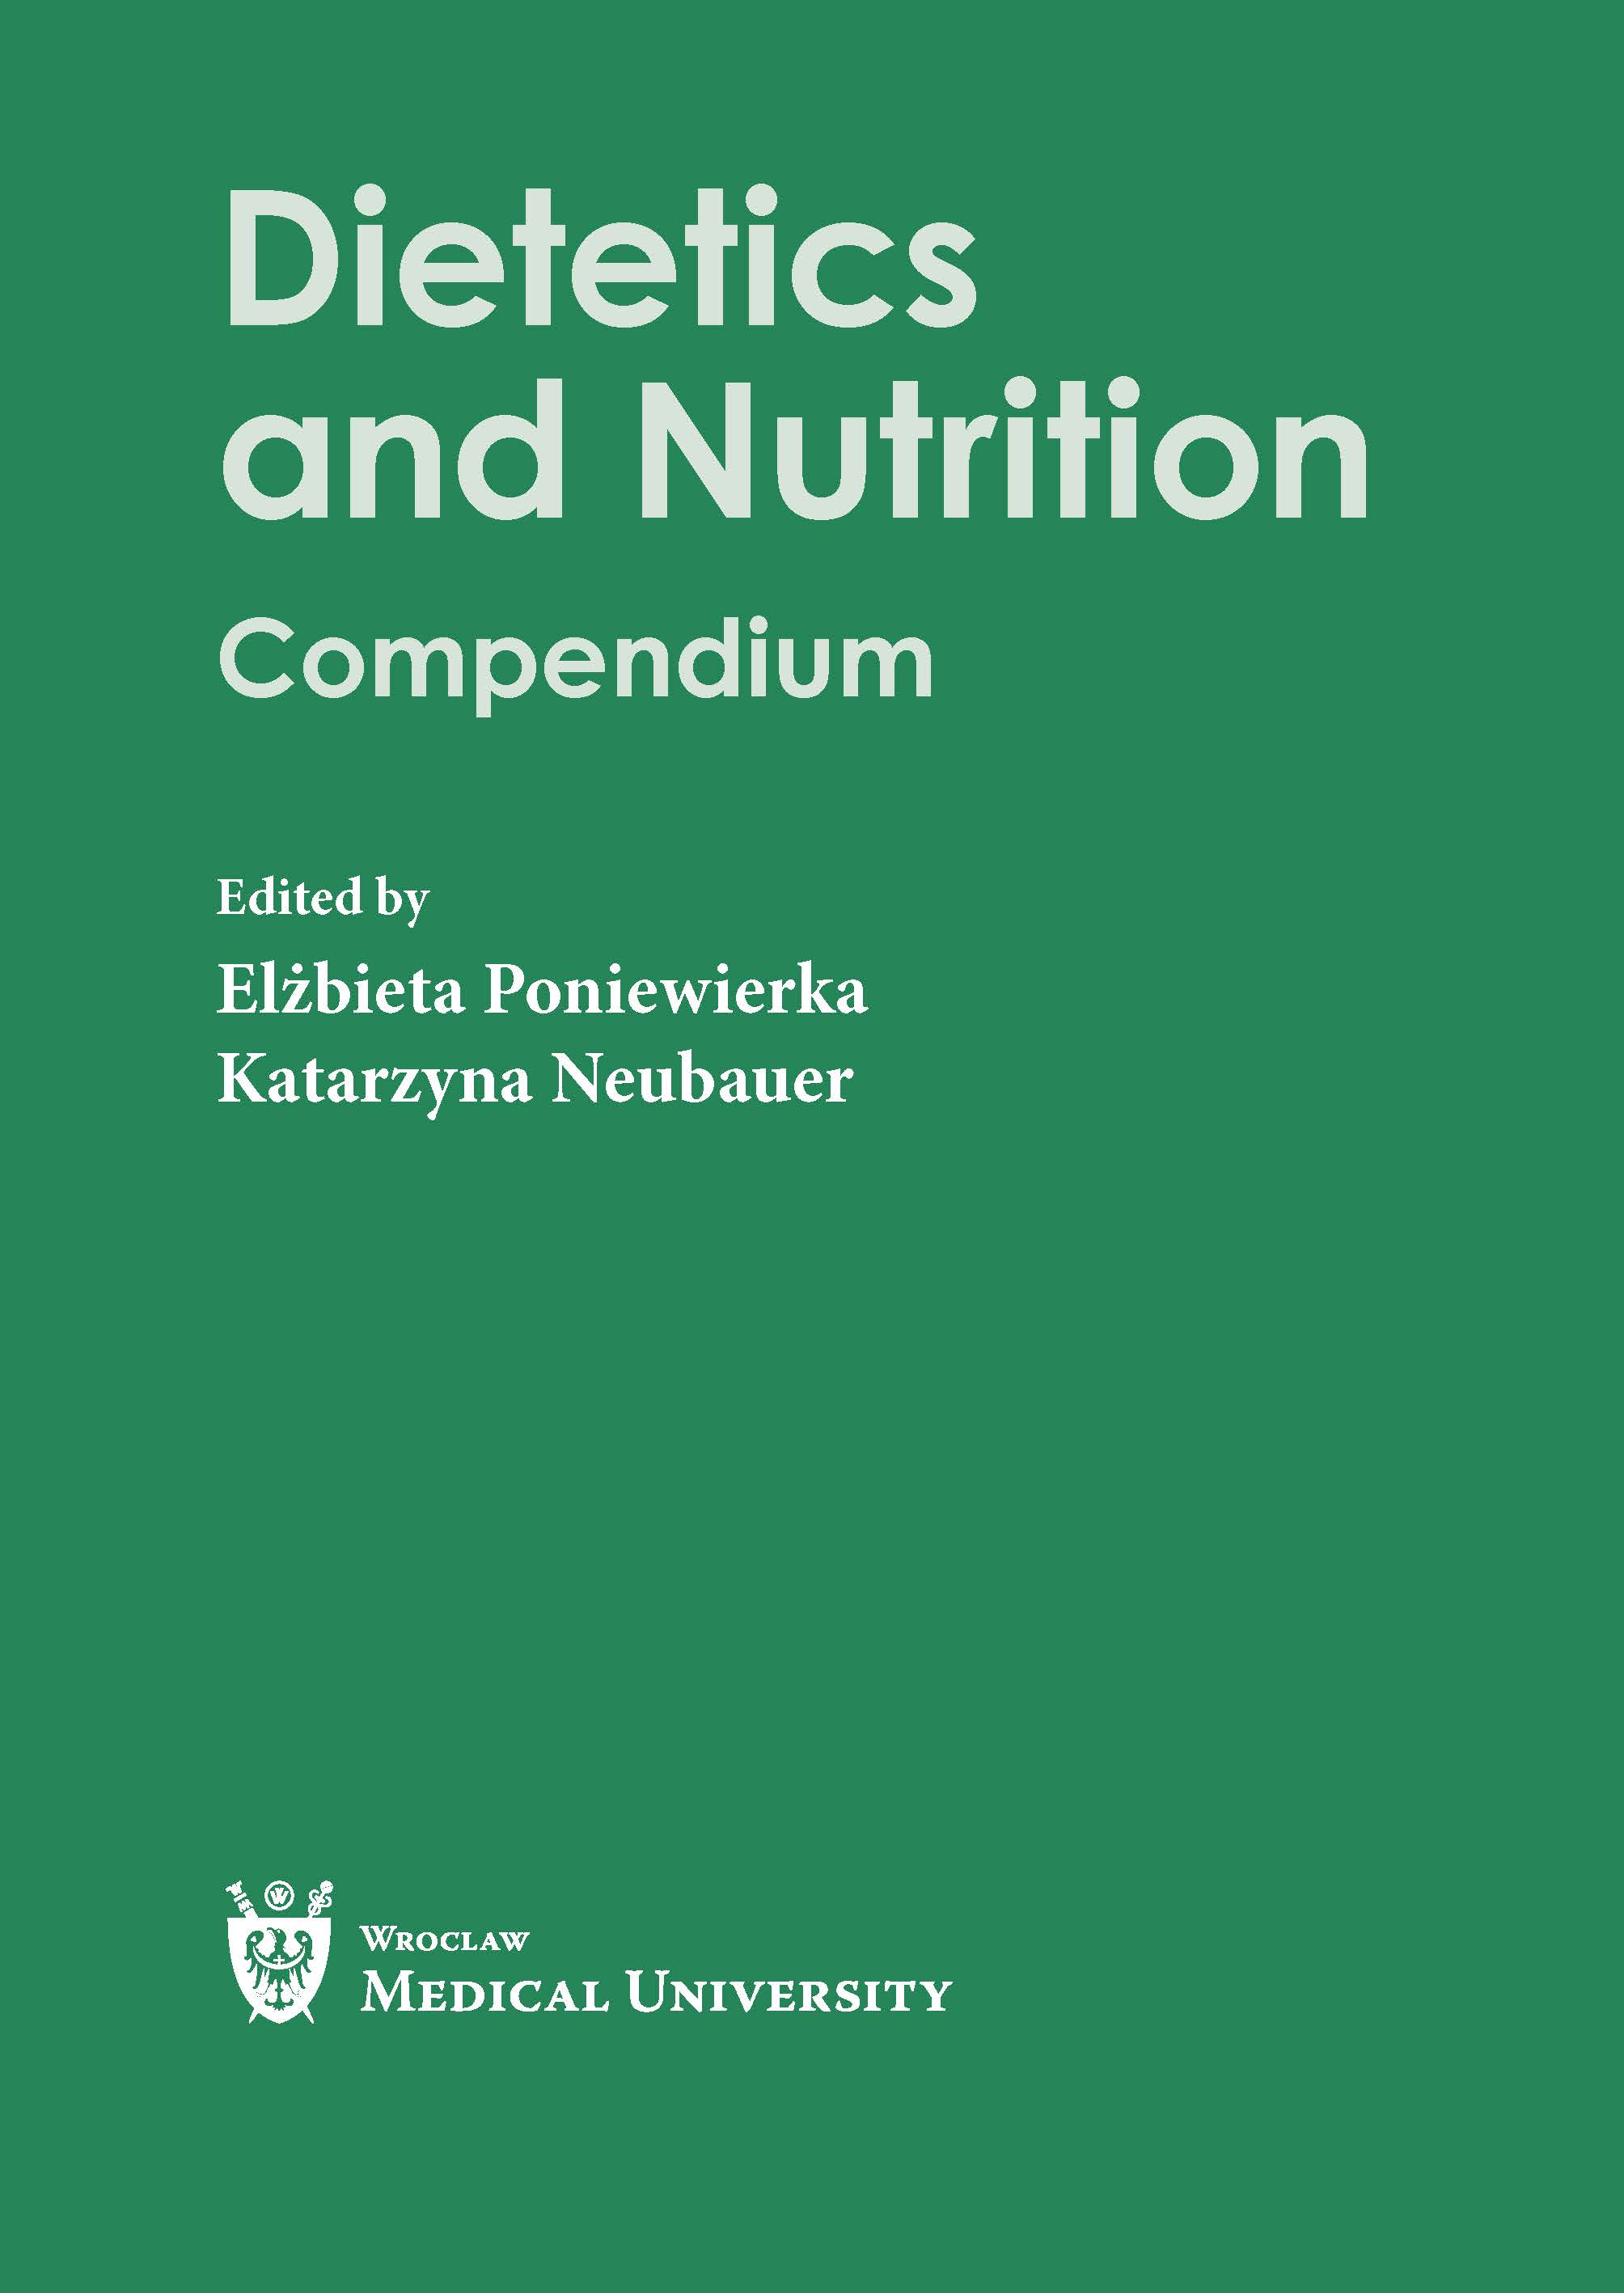 Dietetics and Nutrition. Compendium